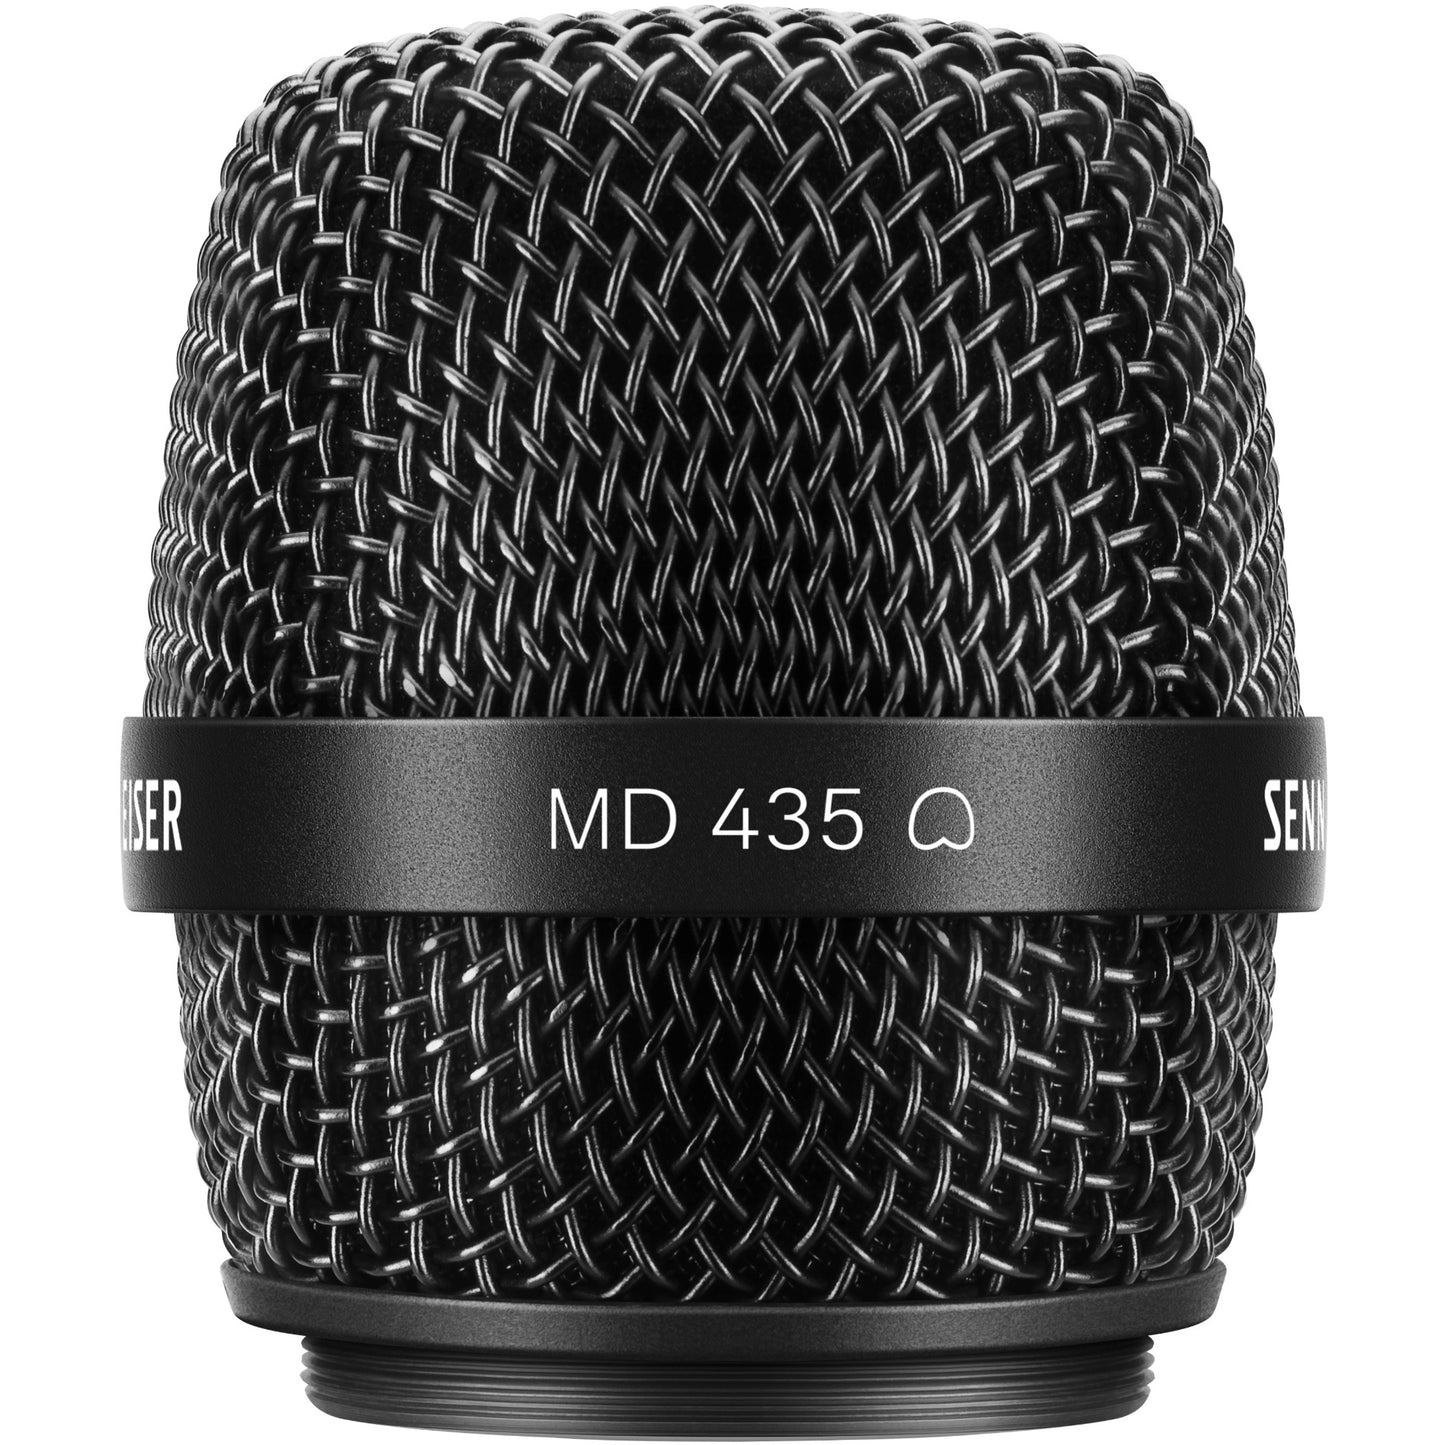 Sennheiser MD 435 Handheld Cardioid Microphone